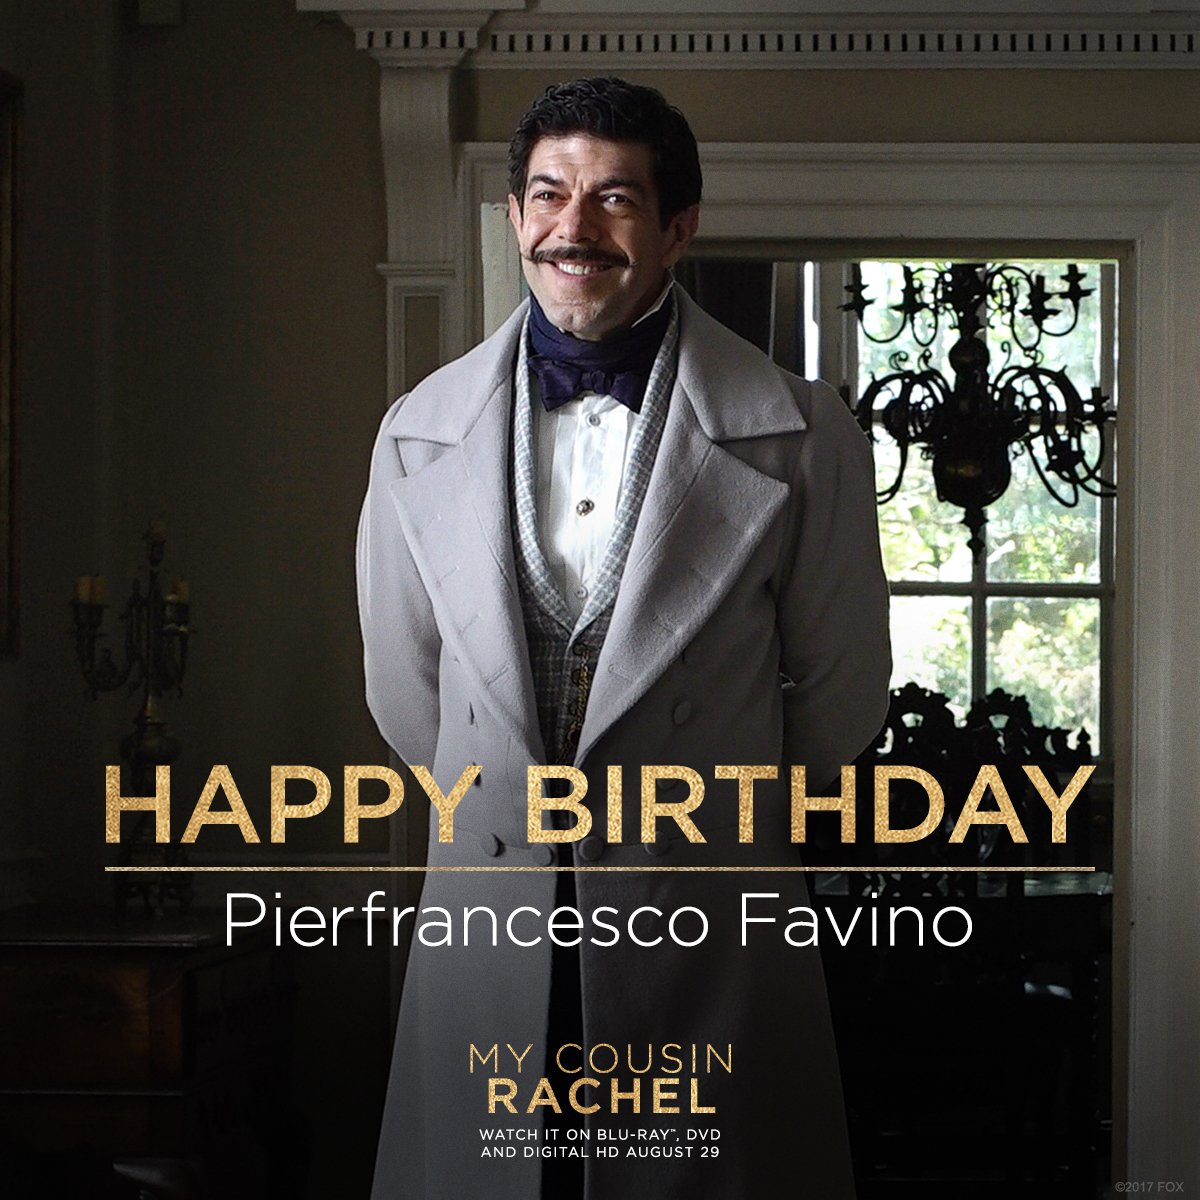 Warm birthday wishes to @pfavino! 🕯 #MyCousinRachel